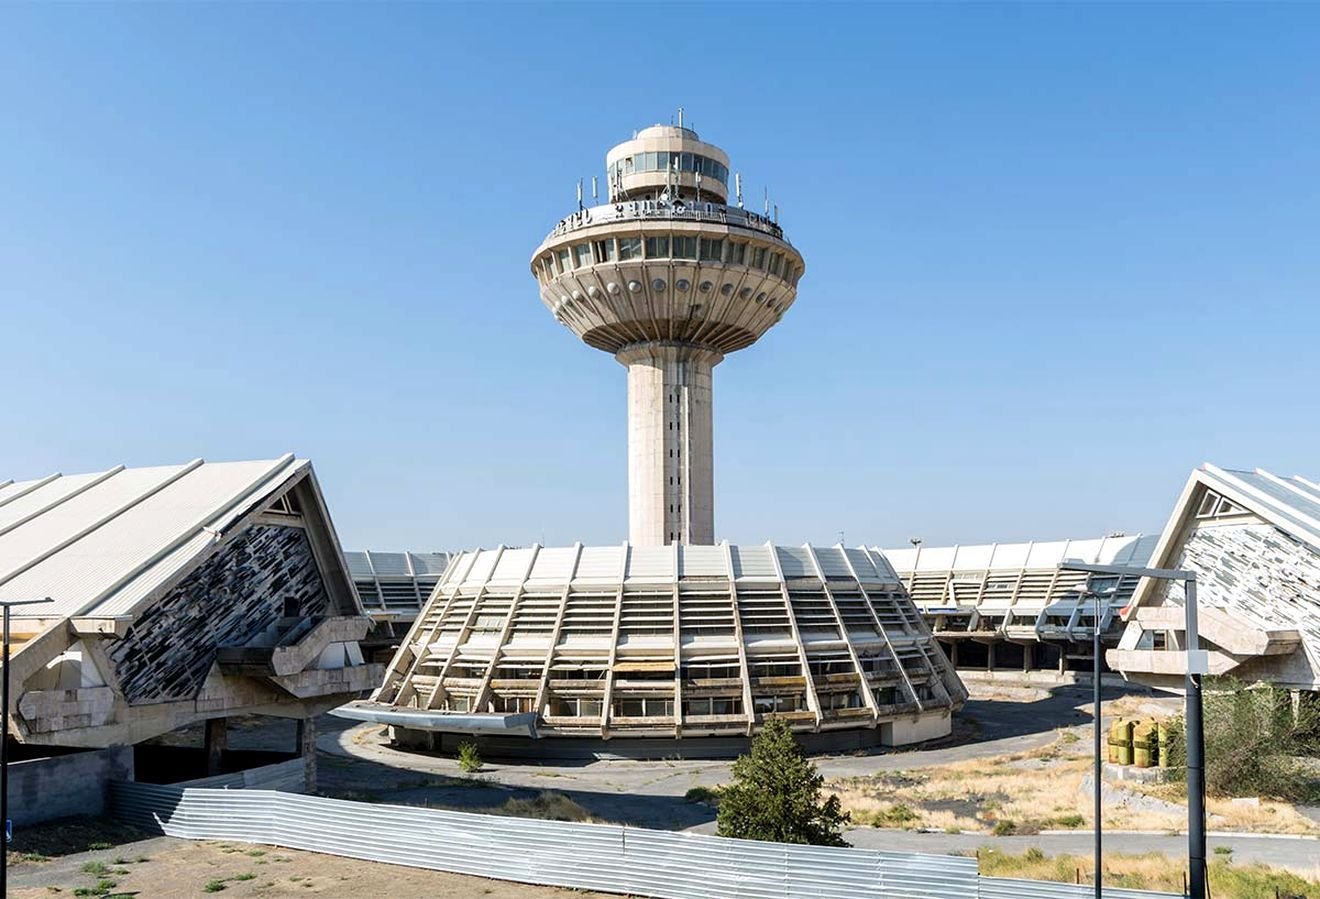 Сайт аэропорта звартноц. Старое здание аэропорта Звартноц. Аэропорт Звартноц Ереван. Башня аэропорта Звартноц. Ереван старый аэропорт Звартноц.